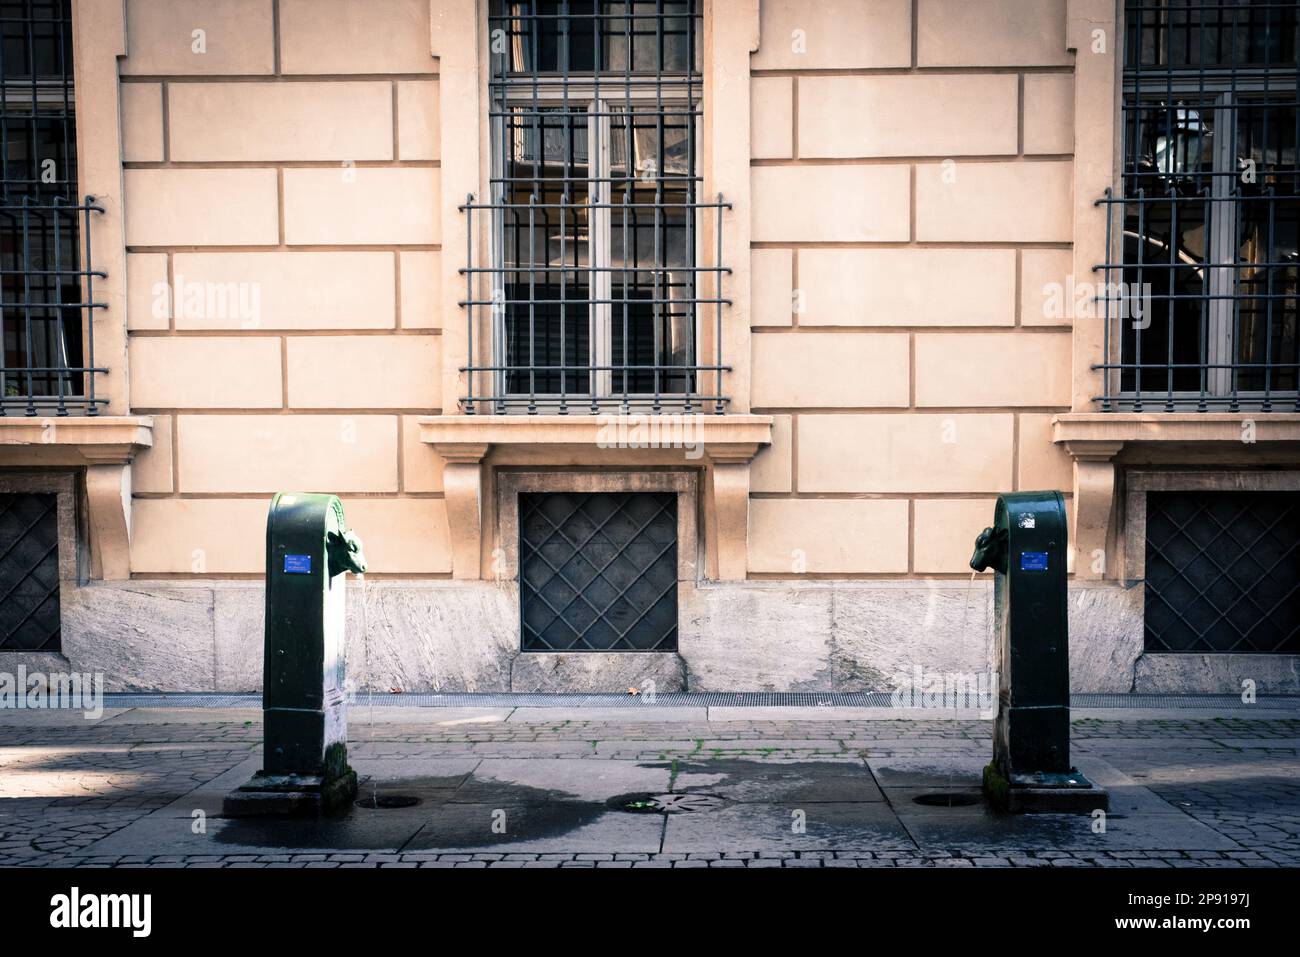 Italien: Turin. Bild des doppelten Toret-Brunnens der Stadt. Andrea Pinna/Alamy Stockfoto